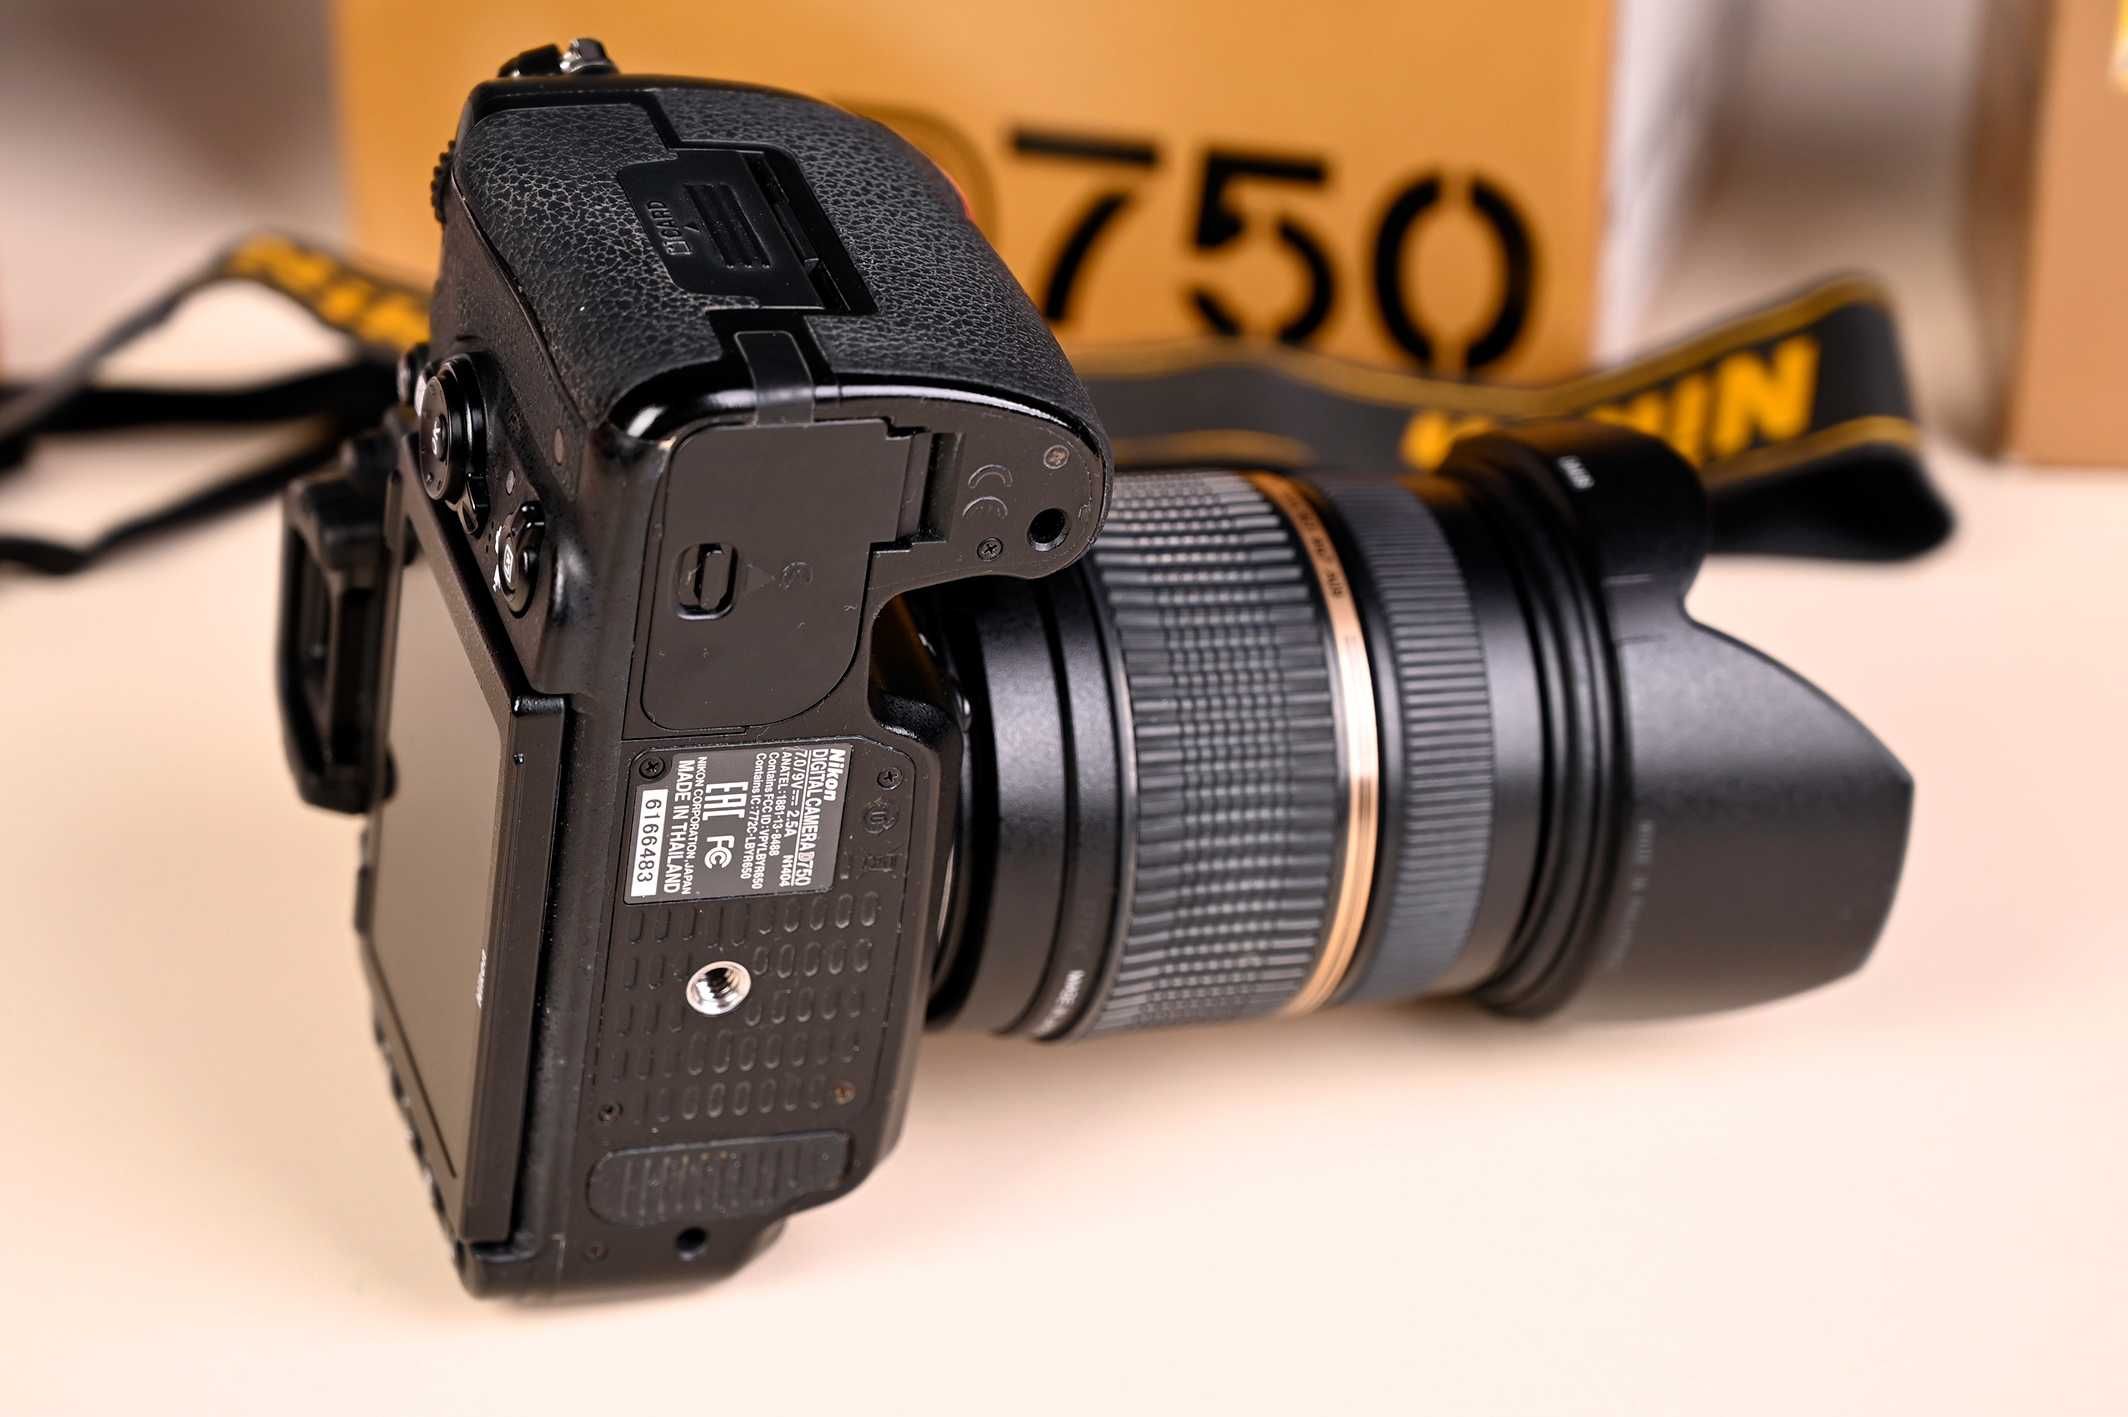 Nikon D750 body, od nowości 1 właściciel